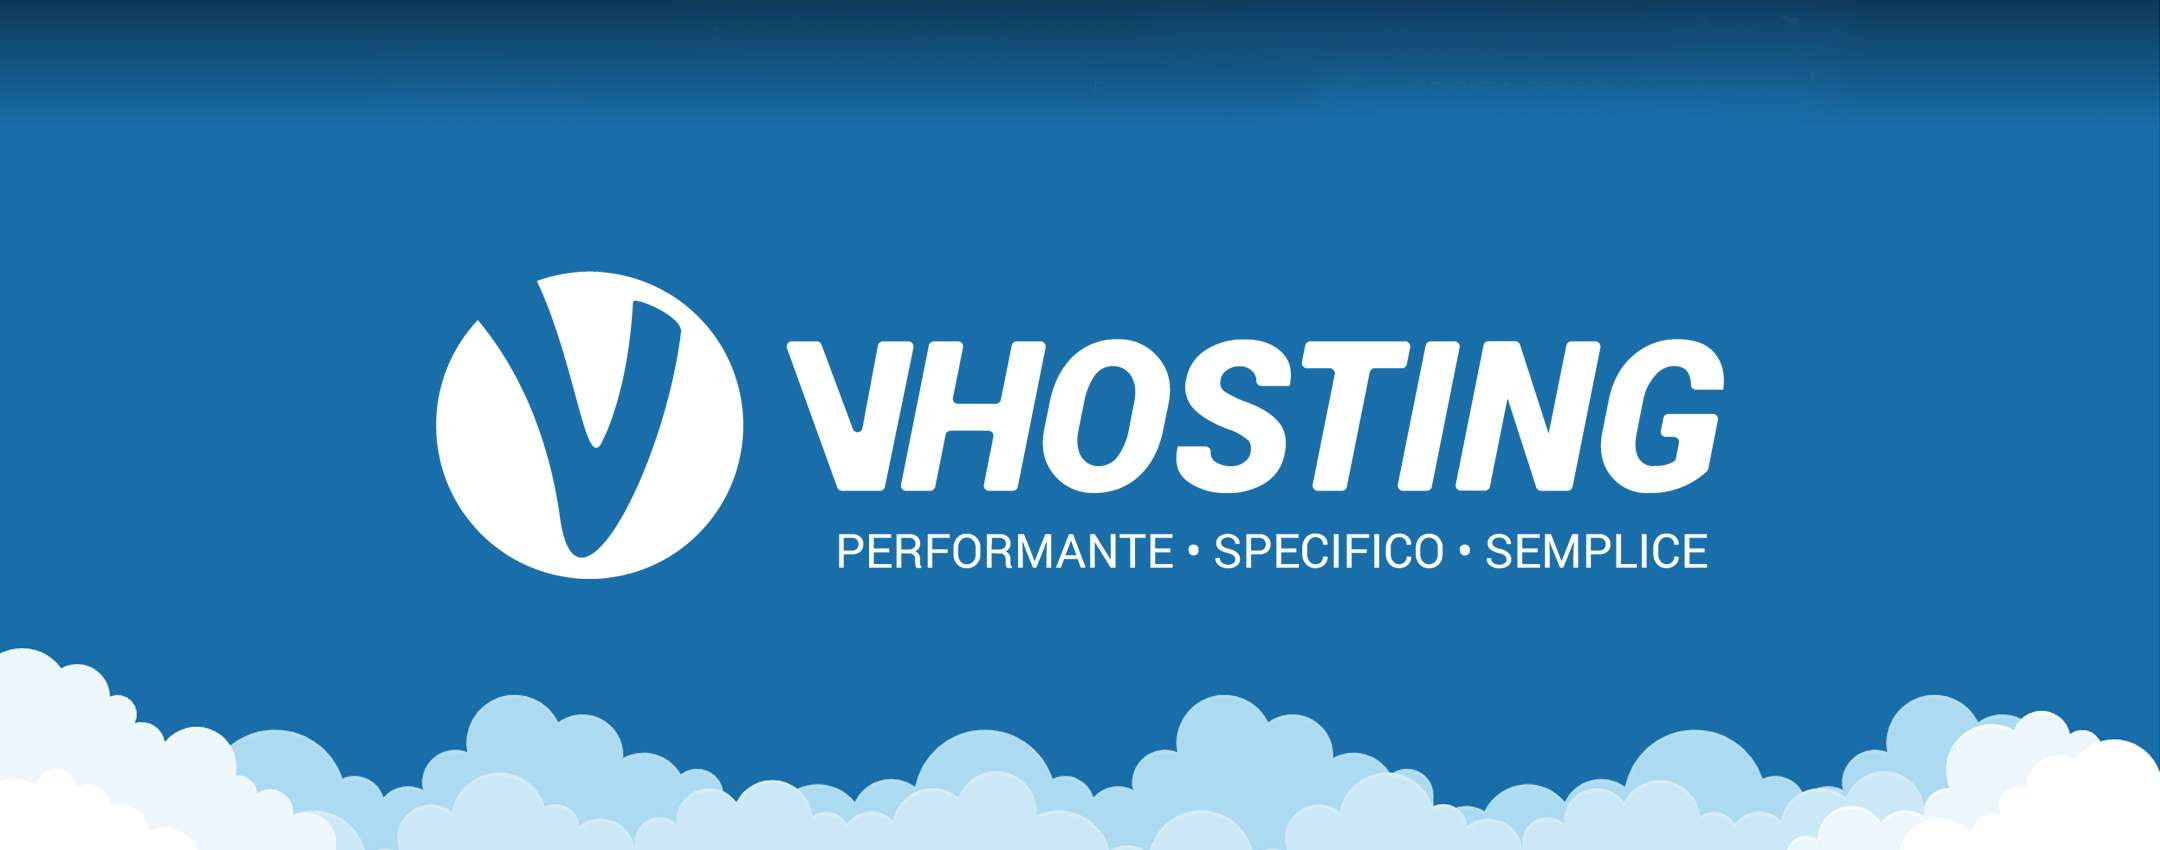 Hosting con dominio gratis a partire da 26 euro: solo VHosting